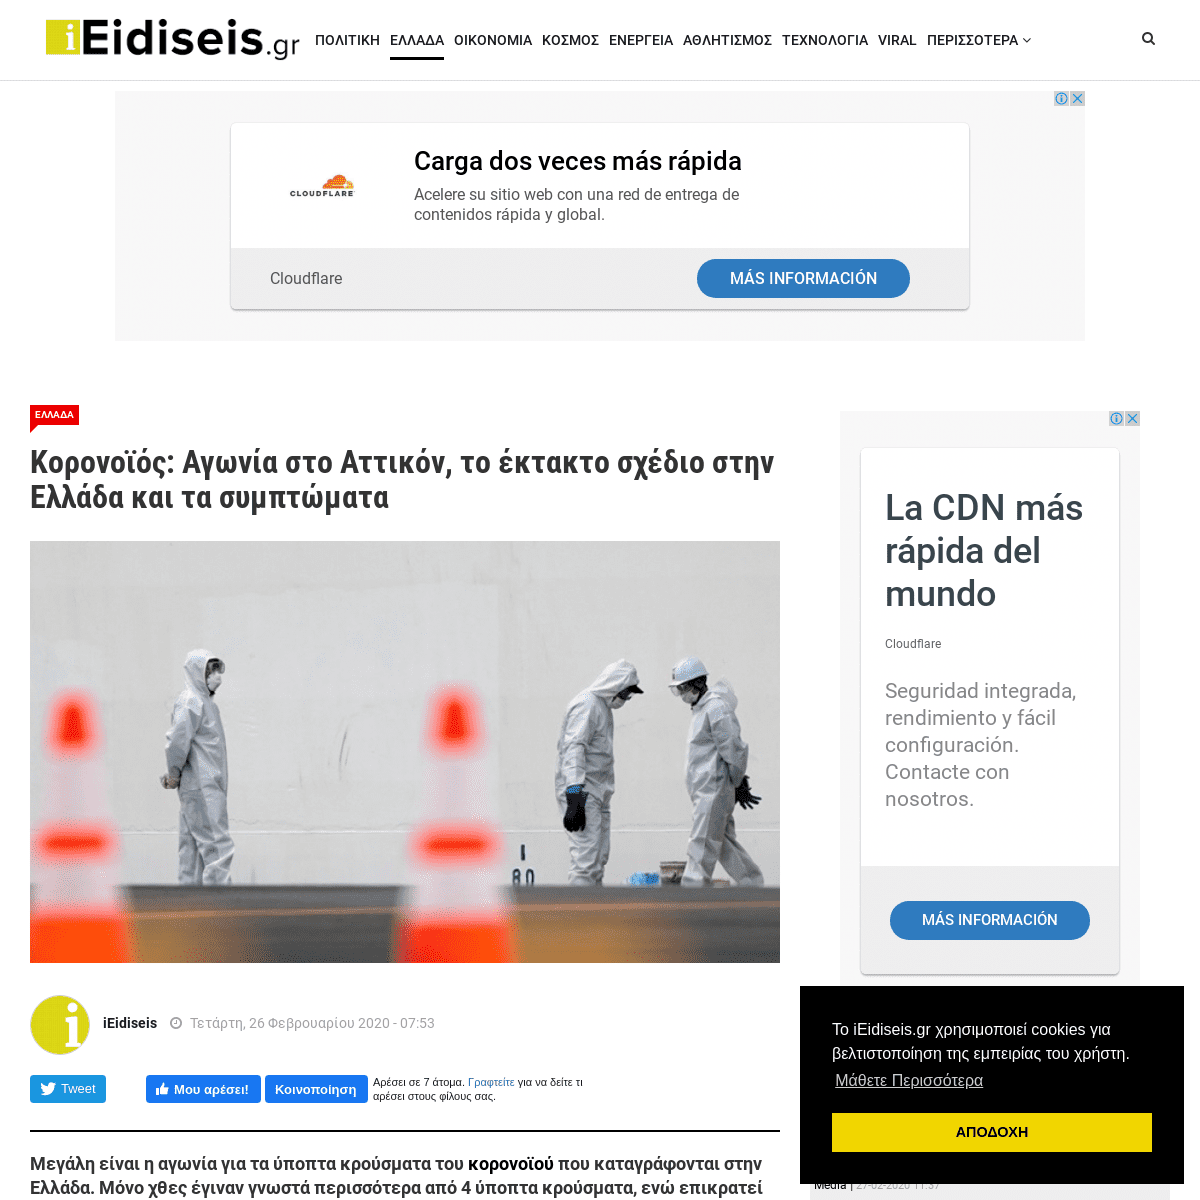 A complete backup of www.ieidiseis.gr/ellada/item/36579-koronoios-agonia-sto-attikon-to-ektakto-sxedio-stin-ellada-kai-ta-sympto